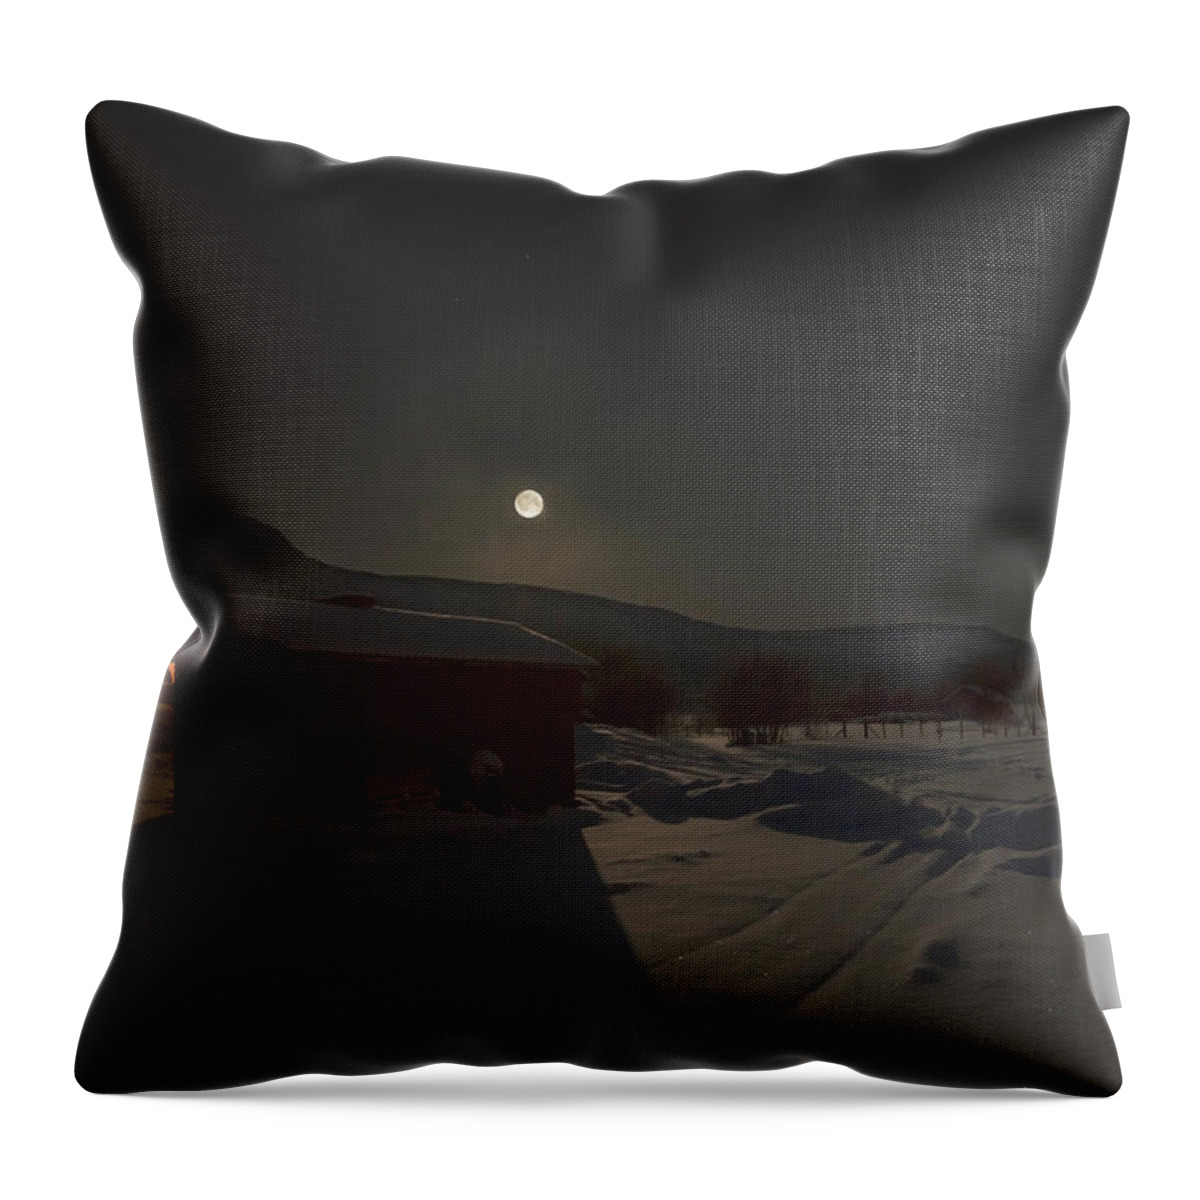 Moon Throw Pillow featuring the photograph Moonlit Arctic Village by Pekka Sammallahti